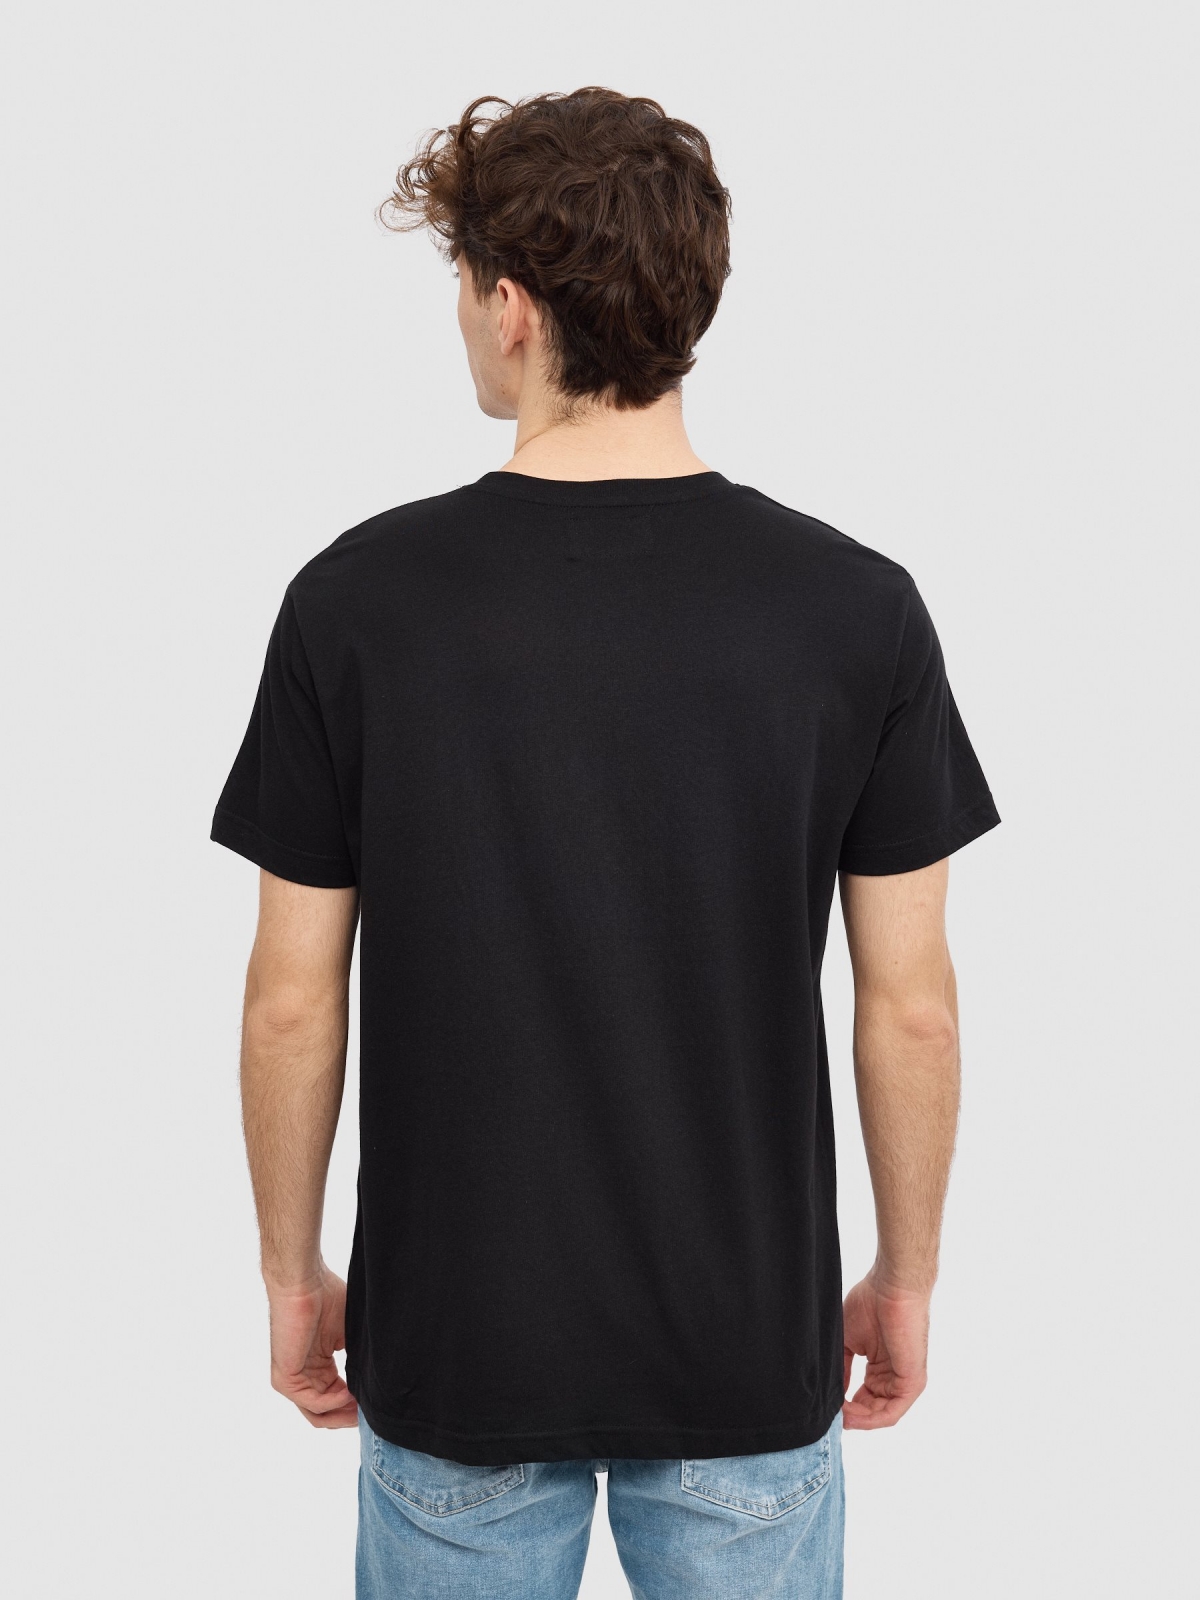 Camiseta Dimensions negro vista media trasera